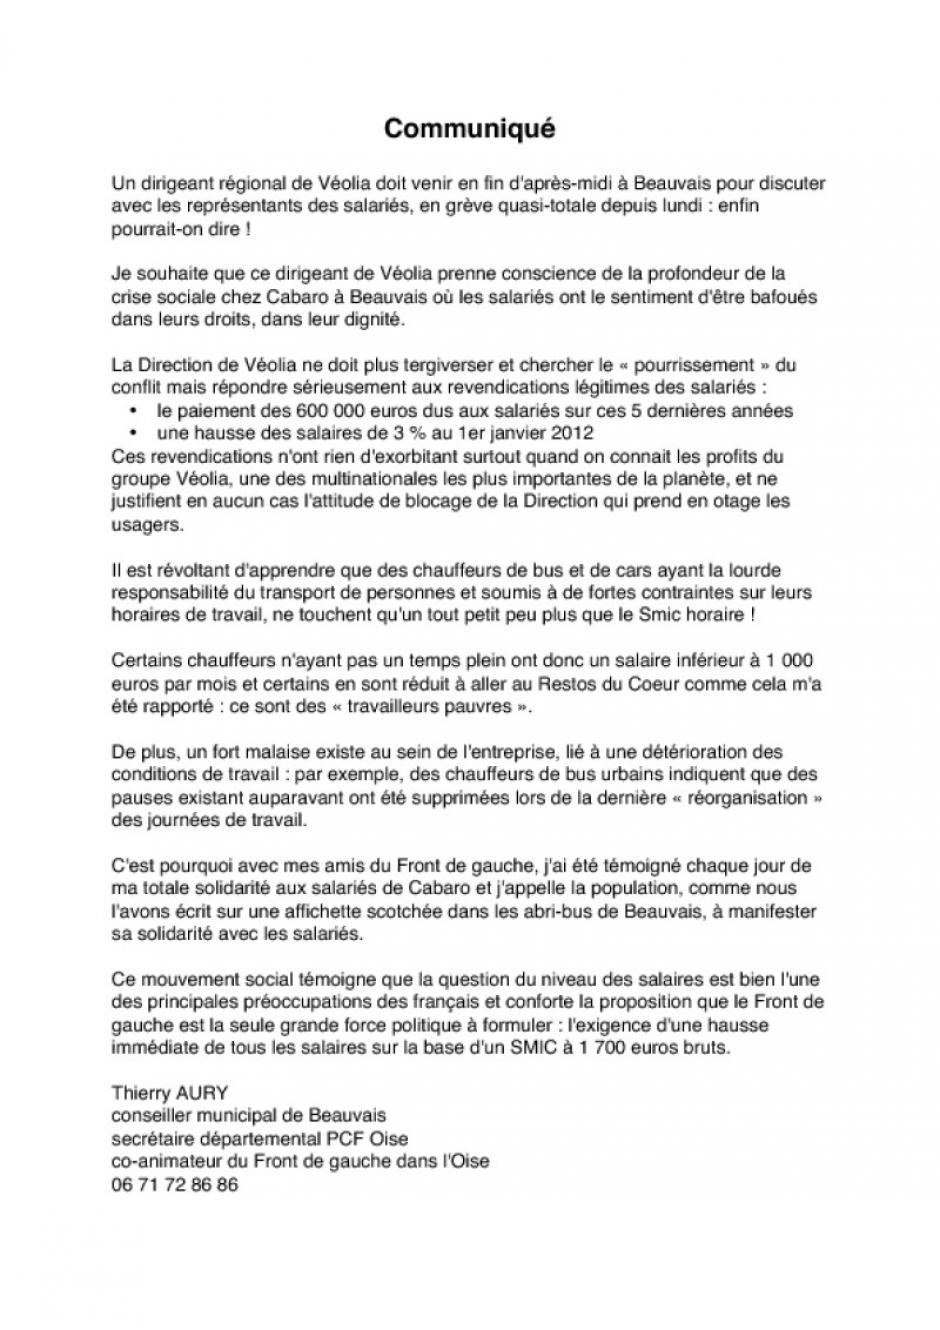 Thierry Aury - Communiqué de presse concernant la grève des salariés de Cabaro-Véolia - Beauvais, 21 mars 2012